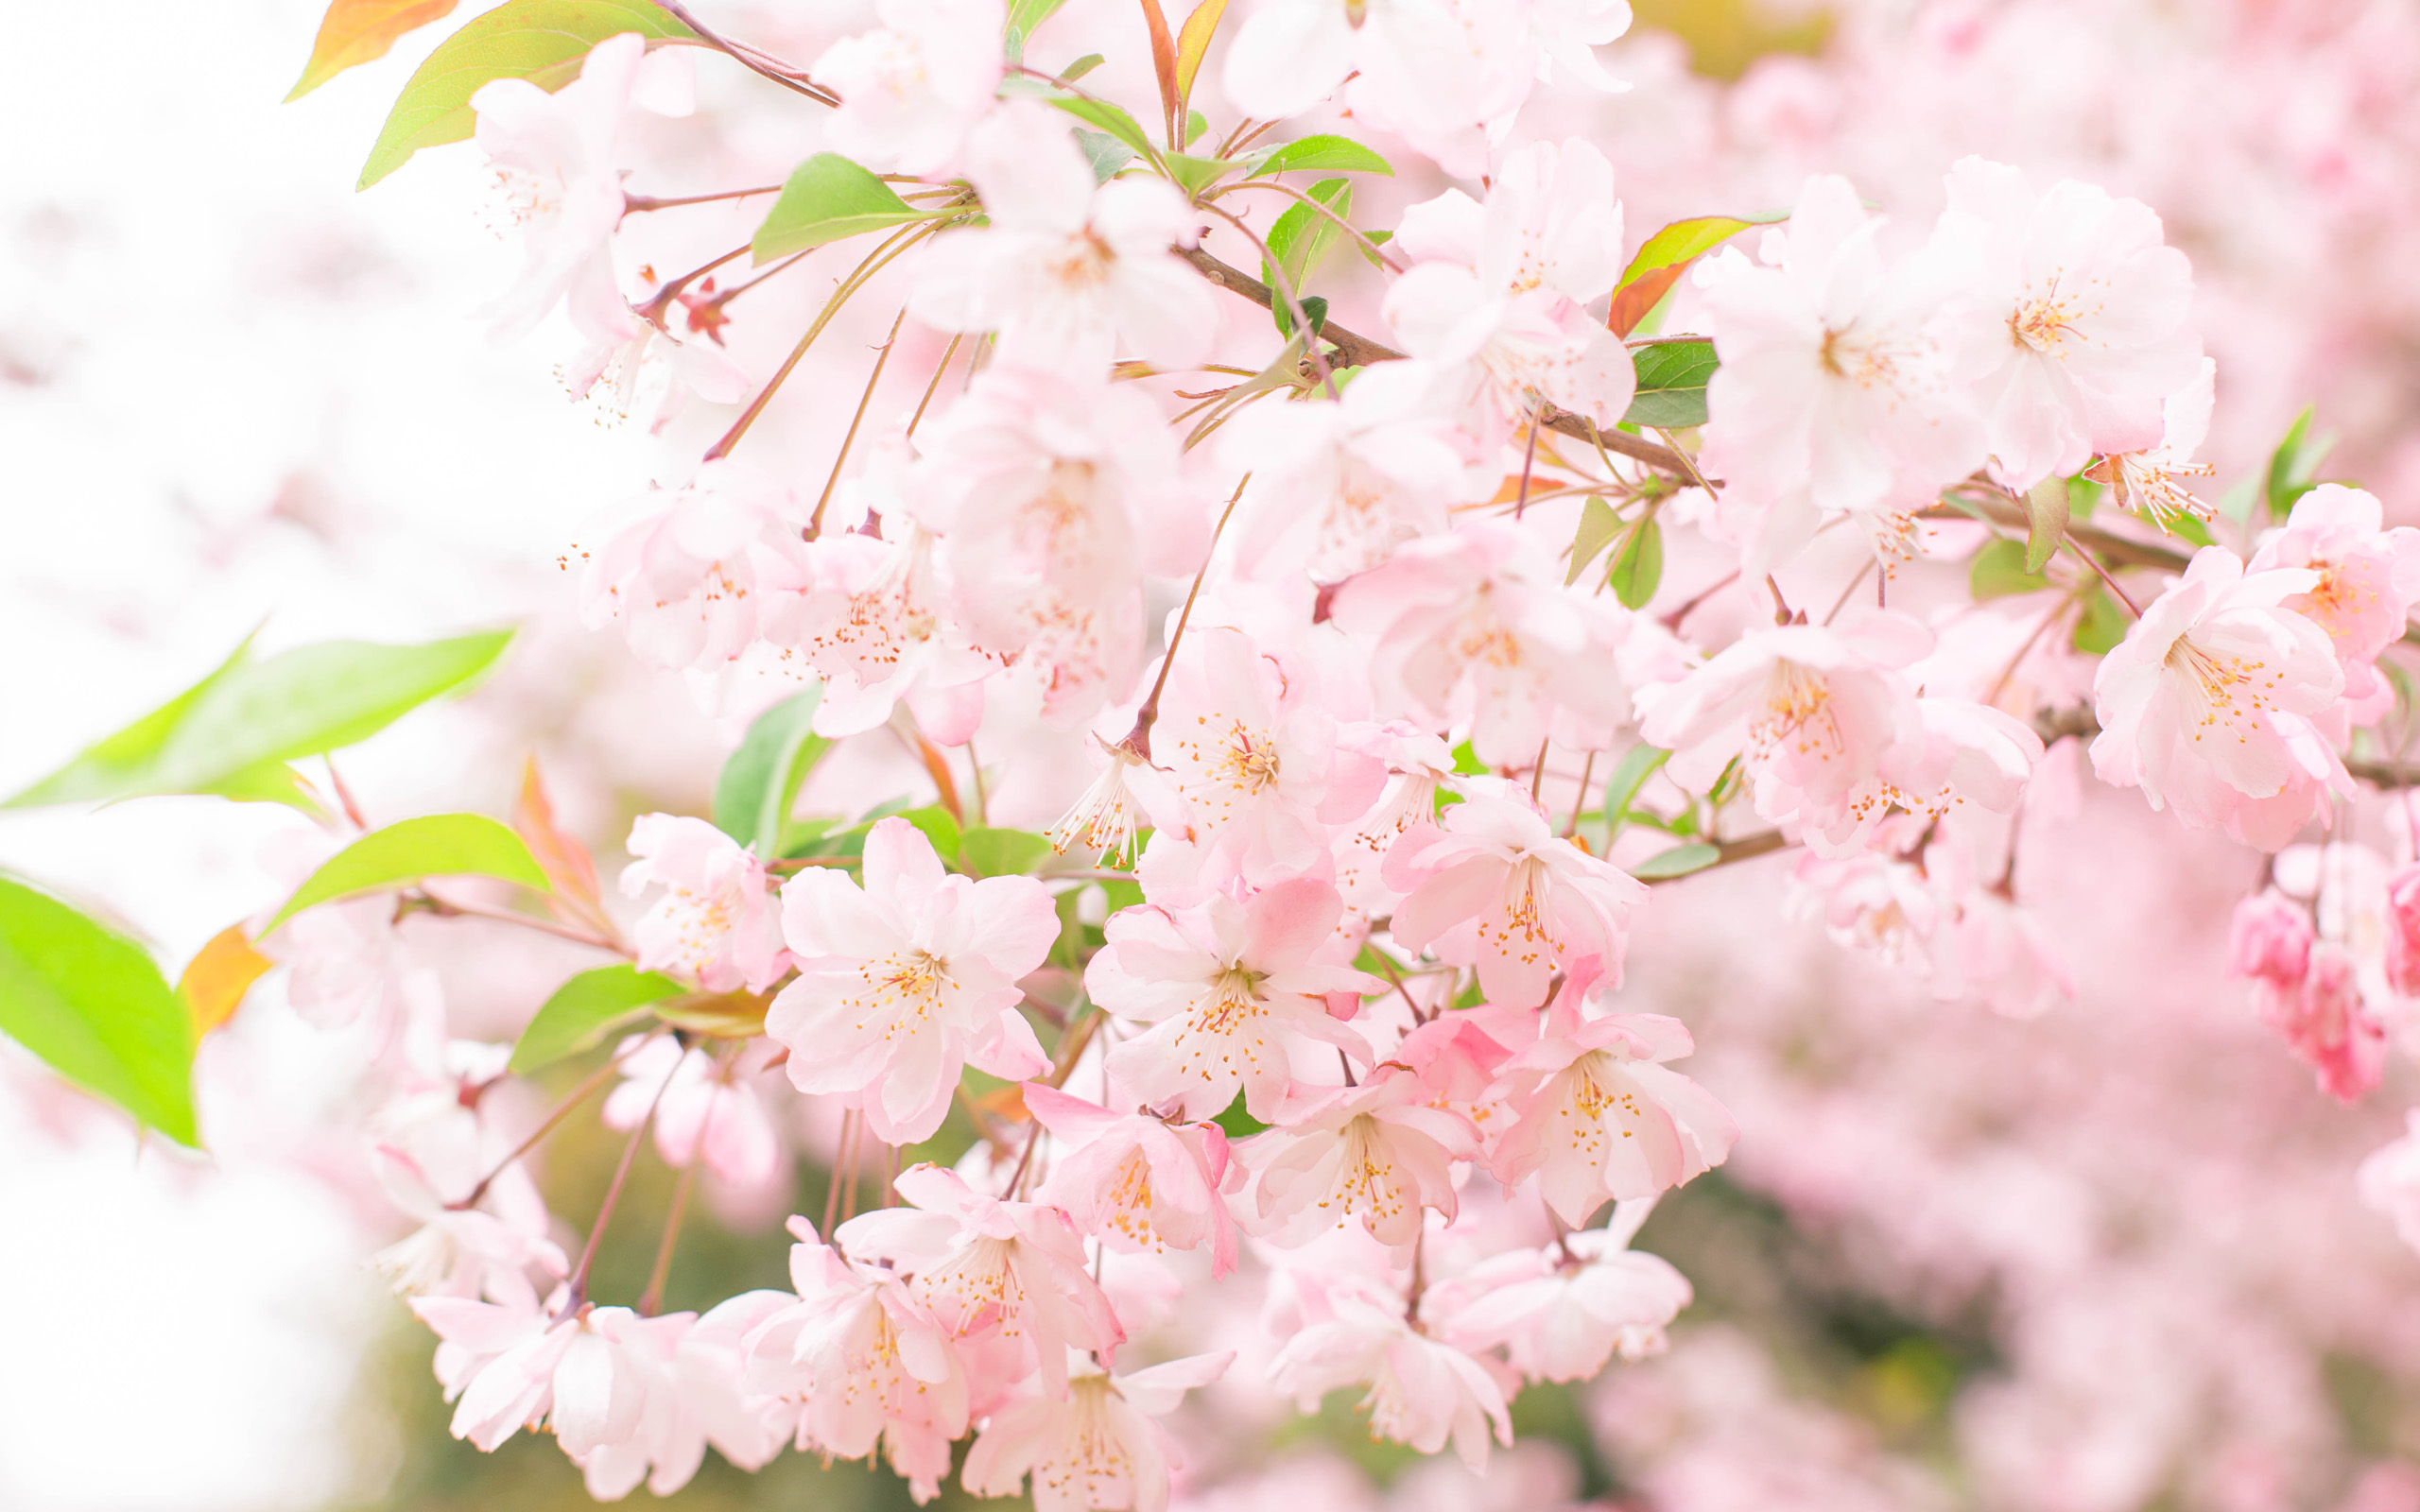 三月已经到了，要说三月最美的花是什么?应该是樱花了吧。唯美的樱花图片看了让人沉醉啊，美美的景色实在令人痴迷，光是看着图片都能大呼过瘾哟。要是实地观赏，效果应该更赞吧。